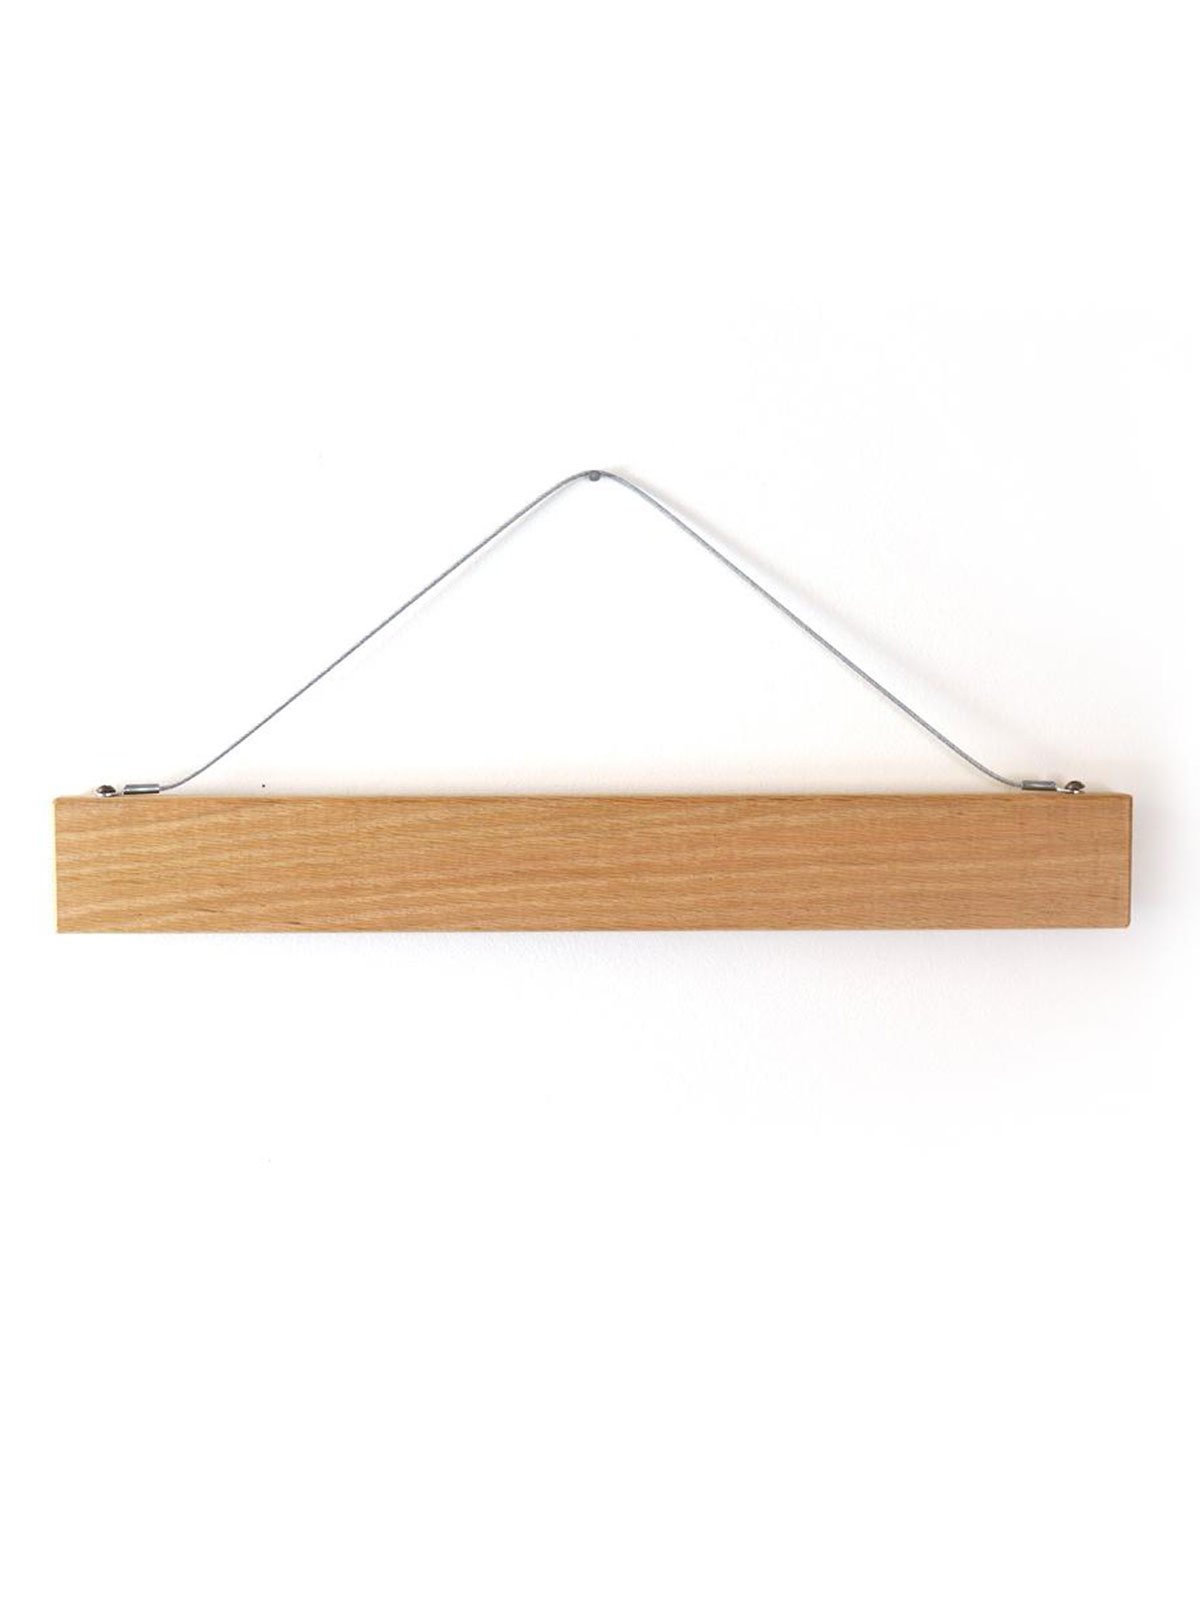 XL Wooden Hanger item